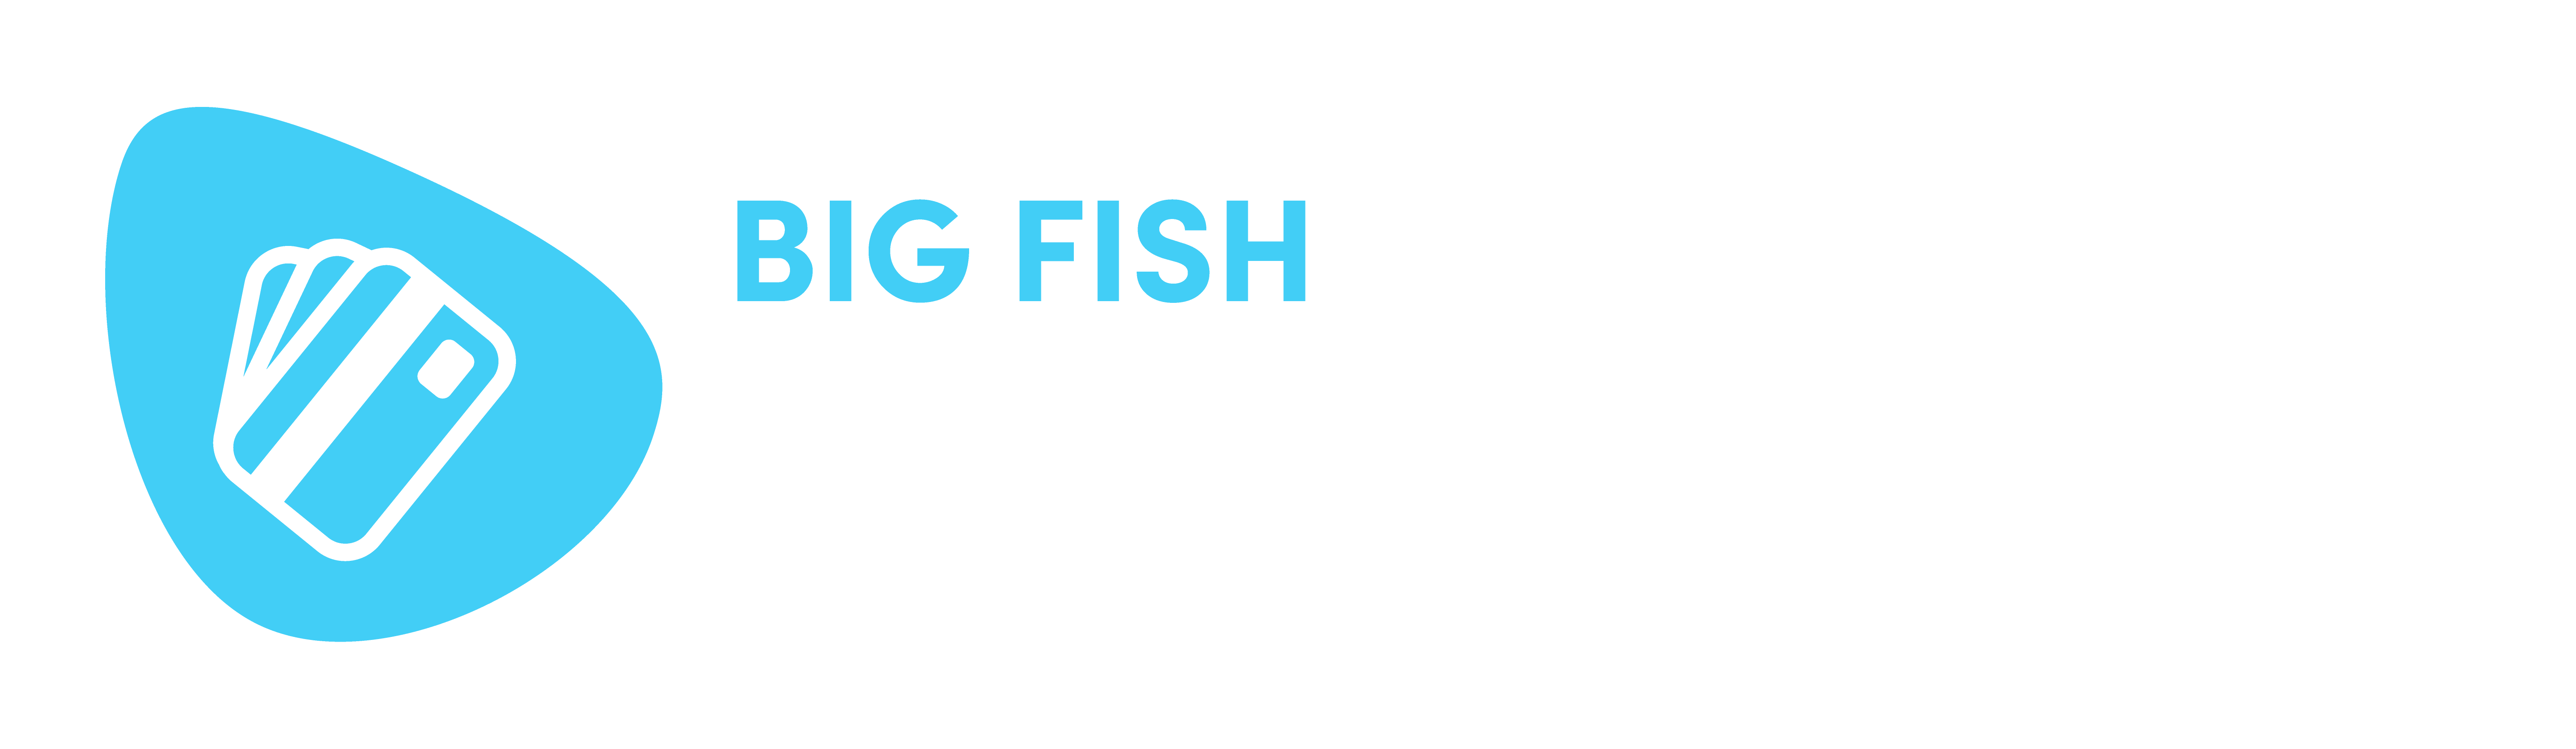 Bigfish Pamynet